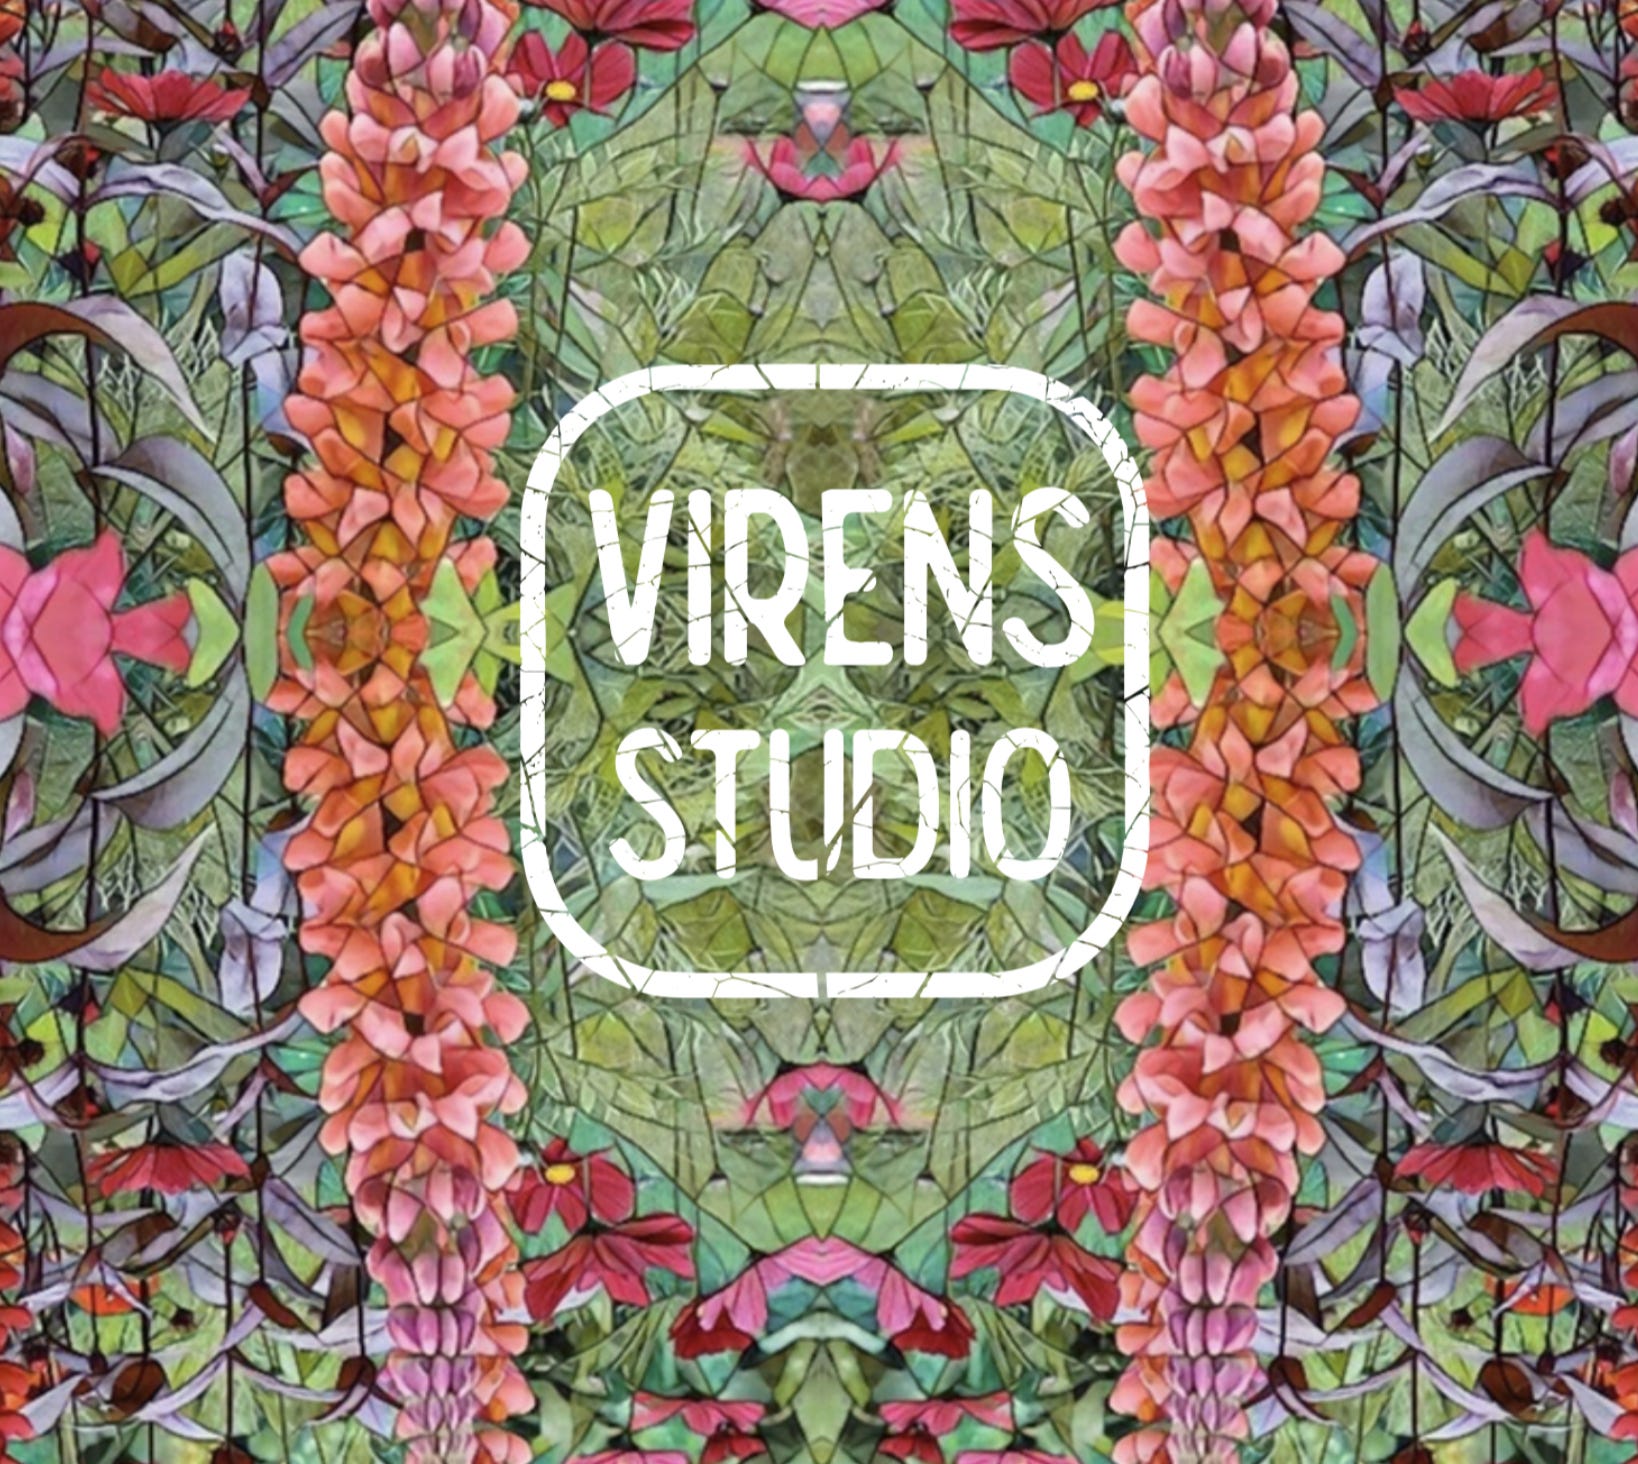 Garden Culture by Virens Studio